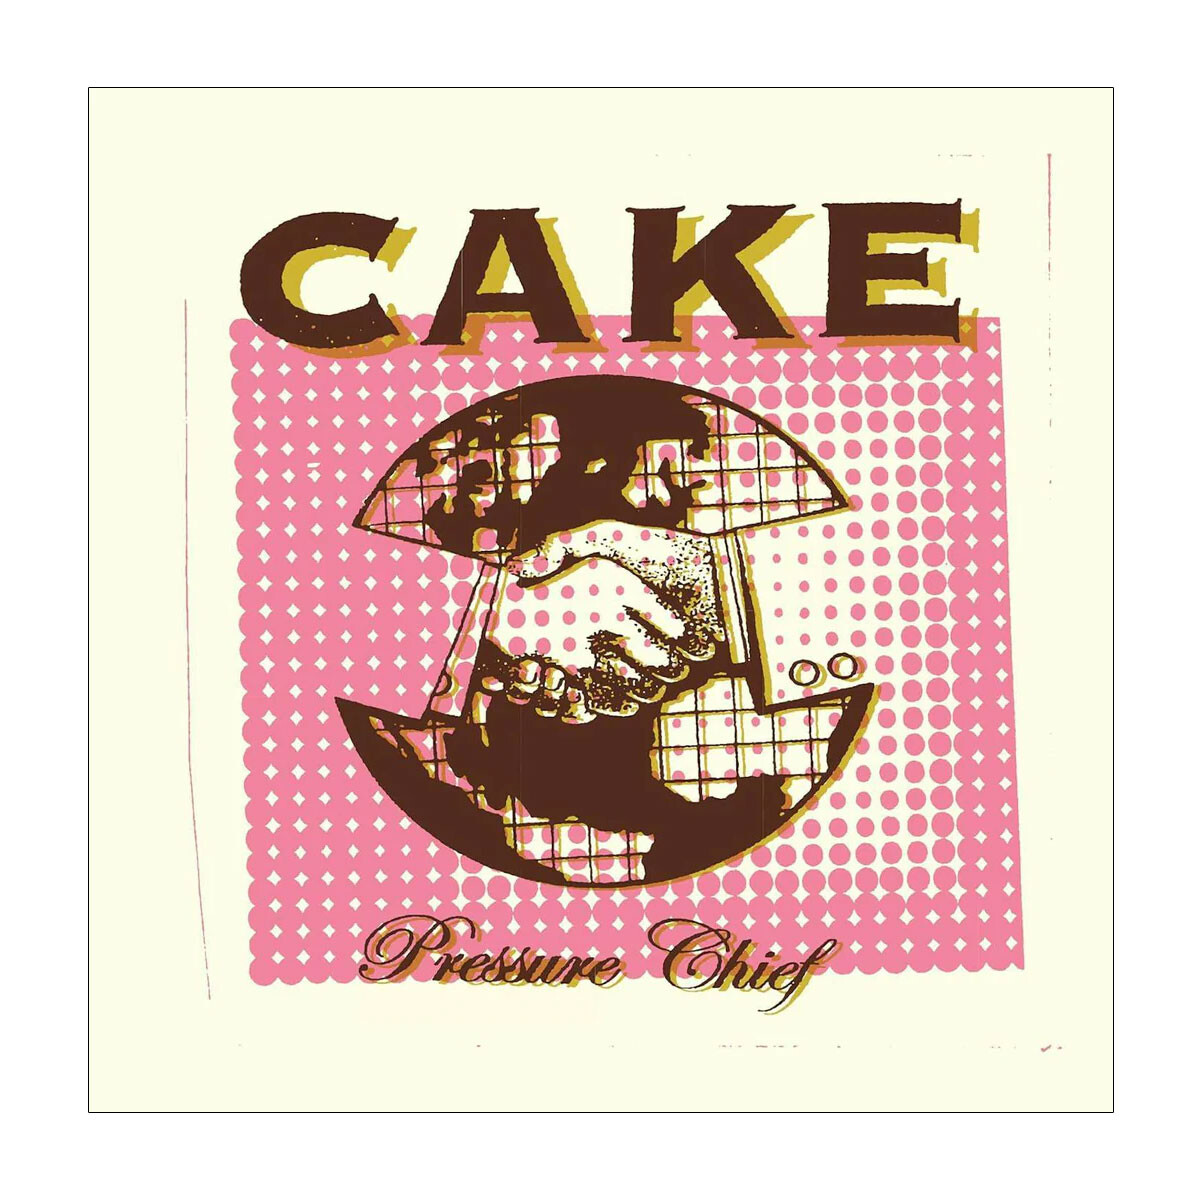 Cake / Pressure Chief - Lp 